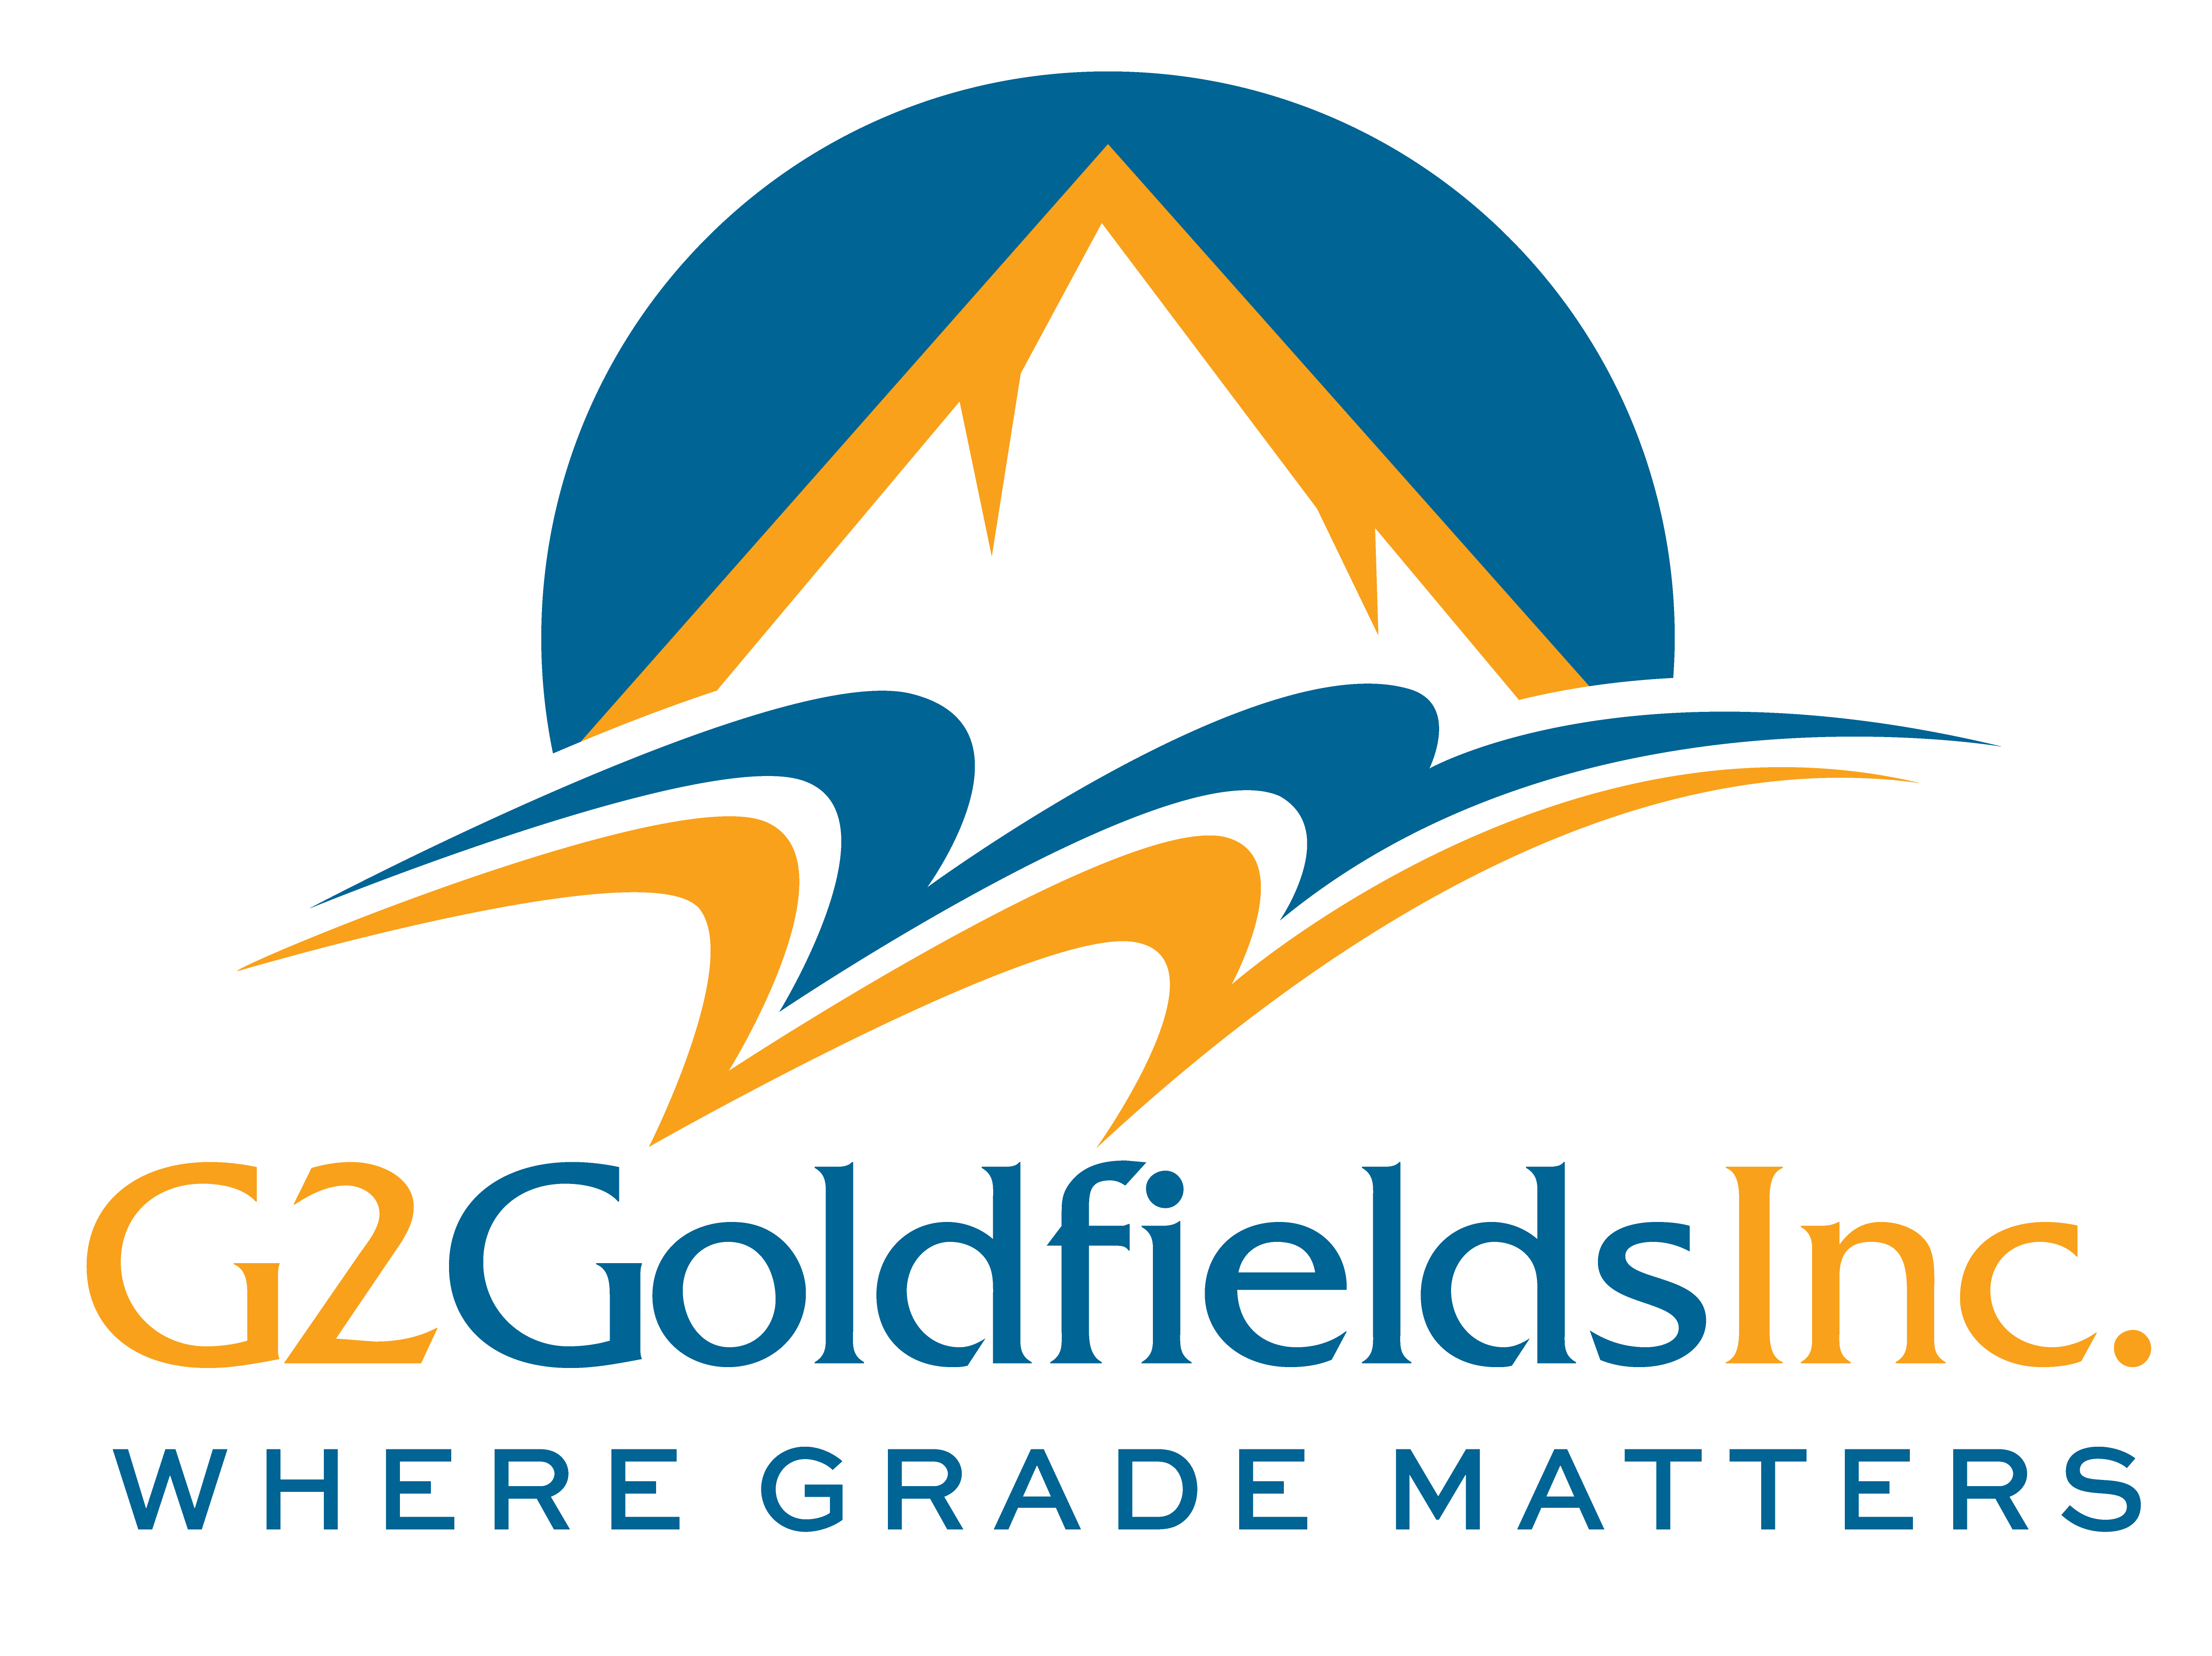 G2GoldfieldsInc_LogoSlogan_MAIN_LG.png